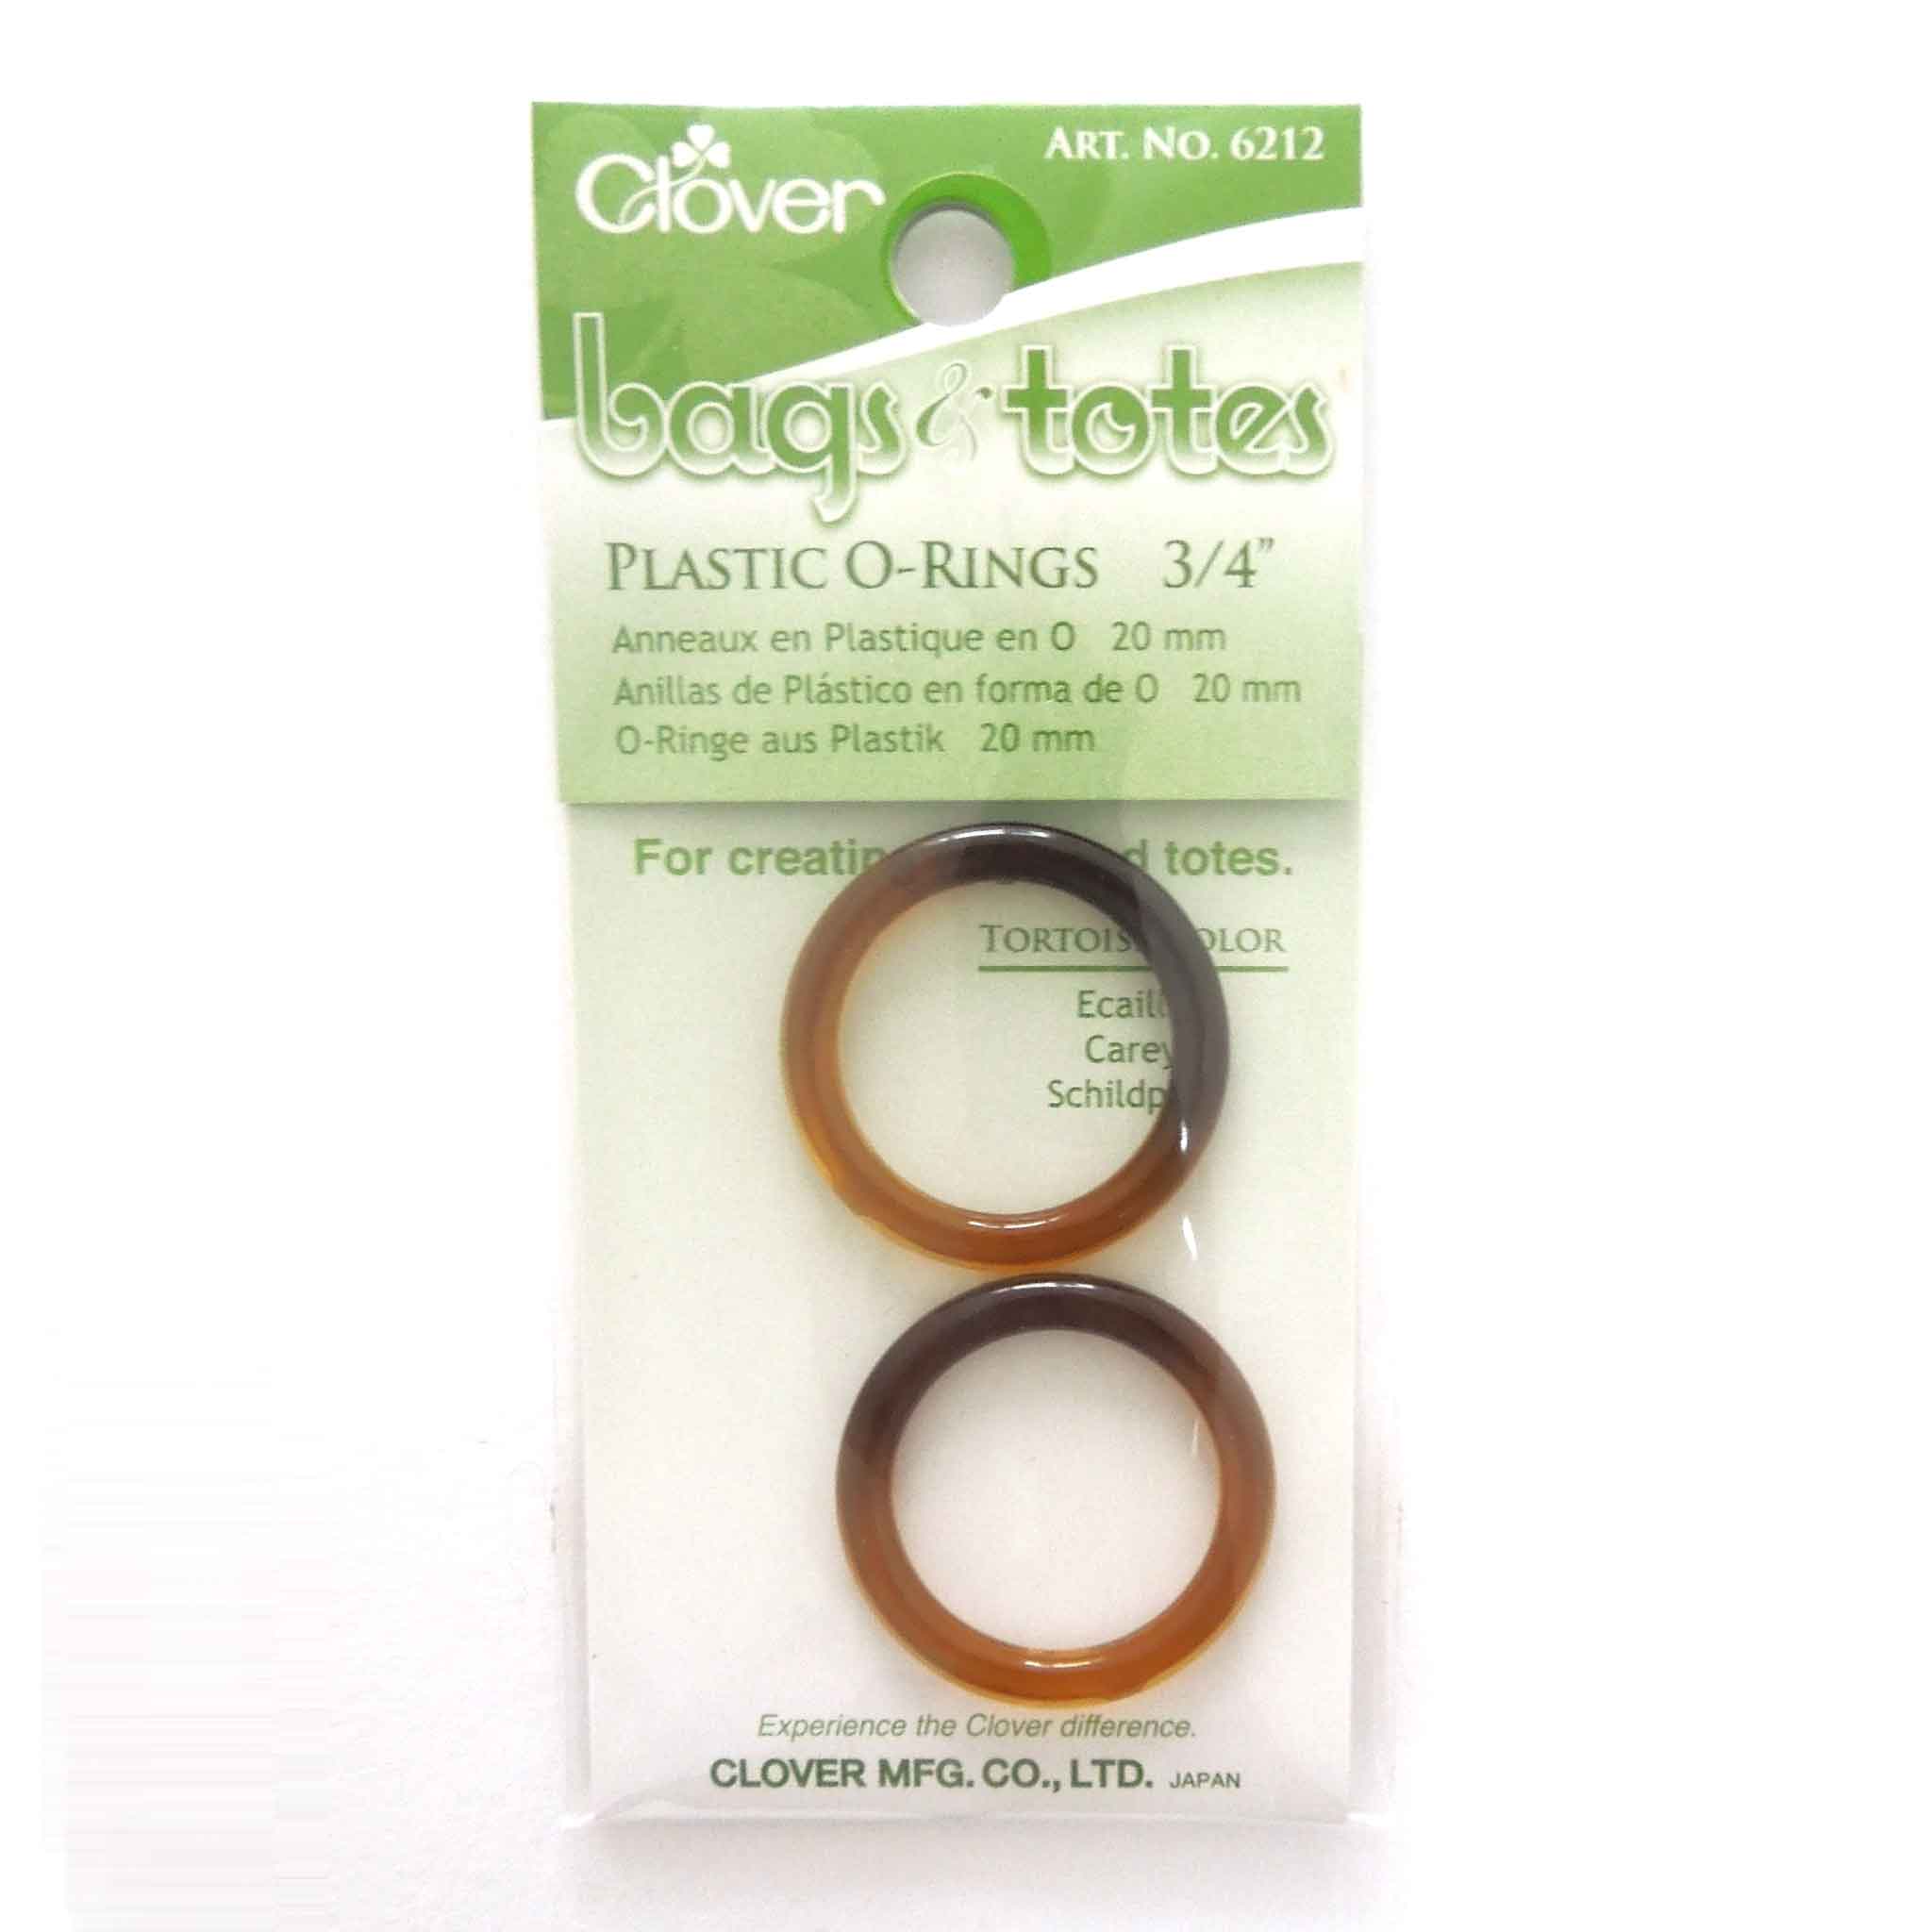 20mm Plastic O-Rings Tortoise Color - Clover 6212